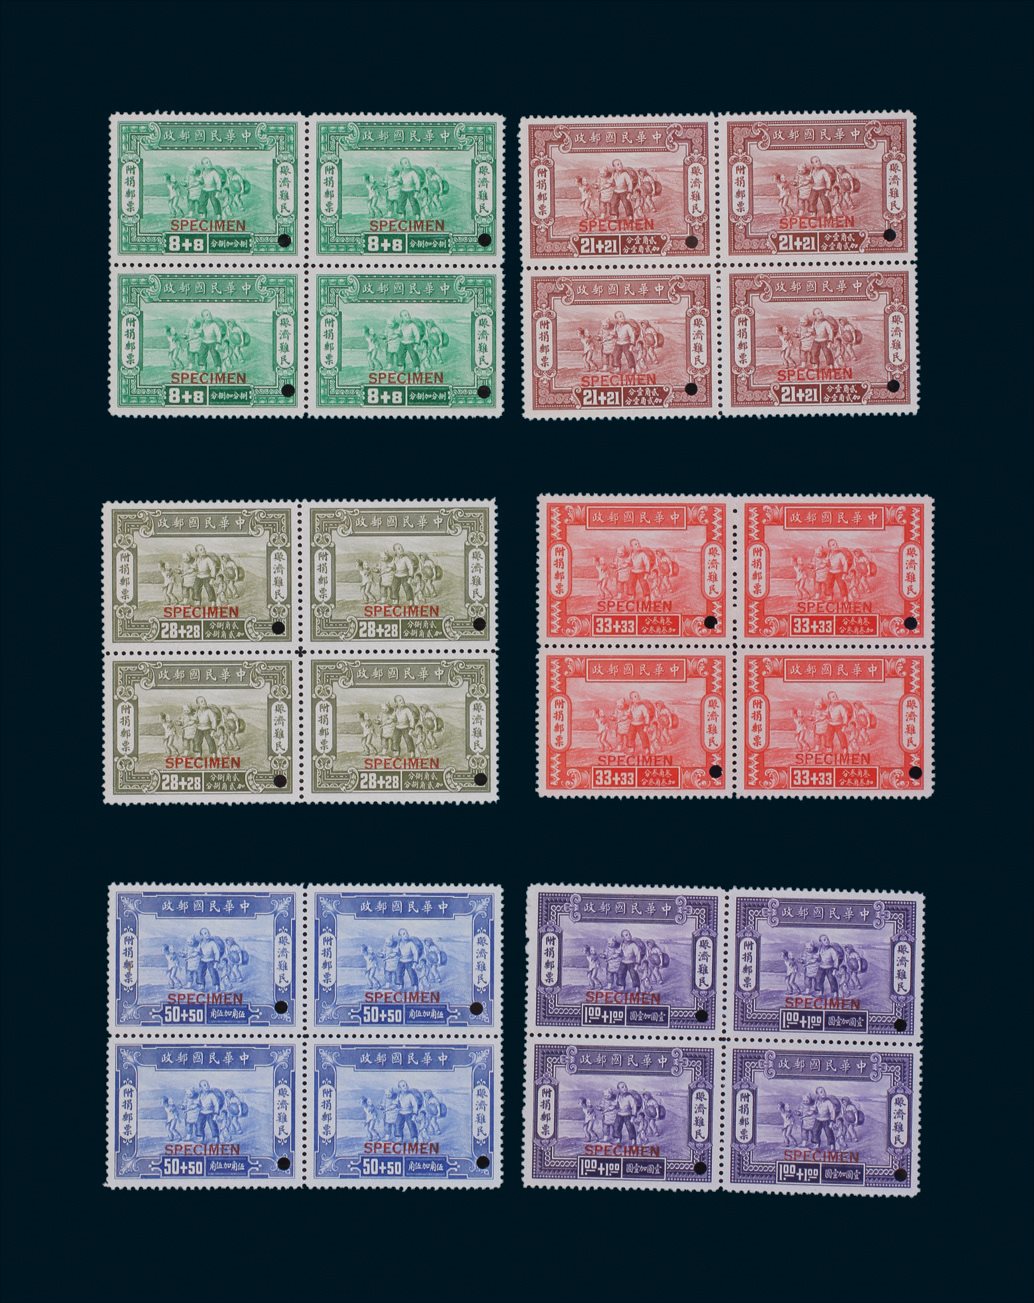 1944年赈济难民附捐邮票样票新票全套6枚四方联各一件